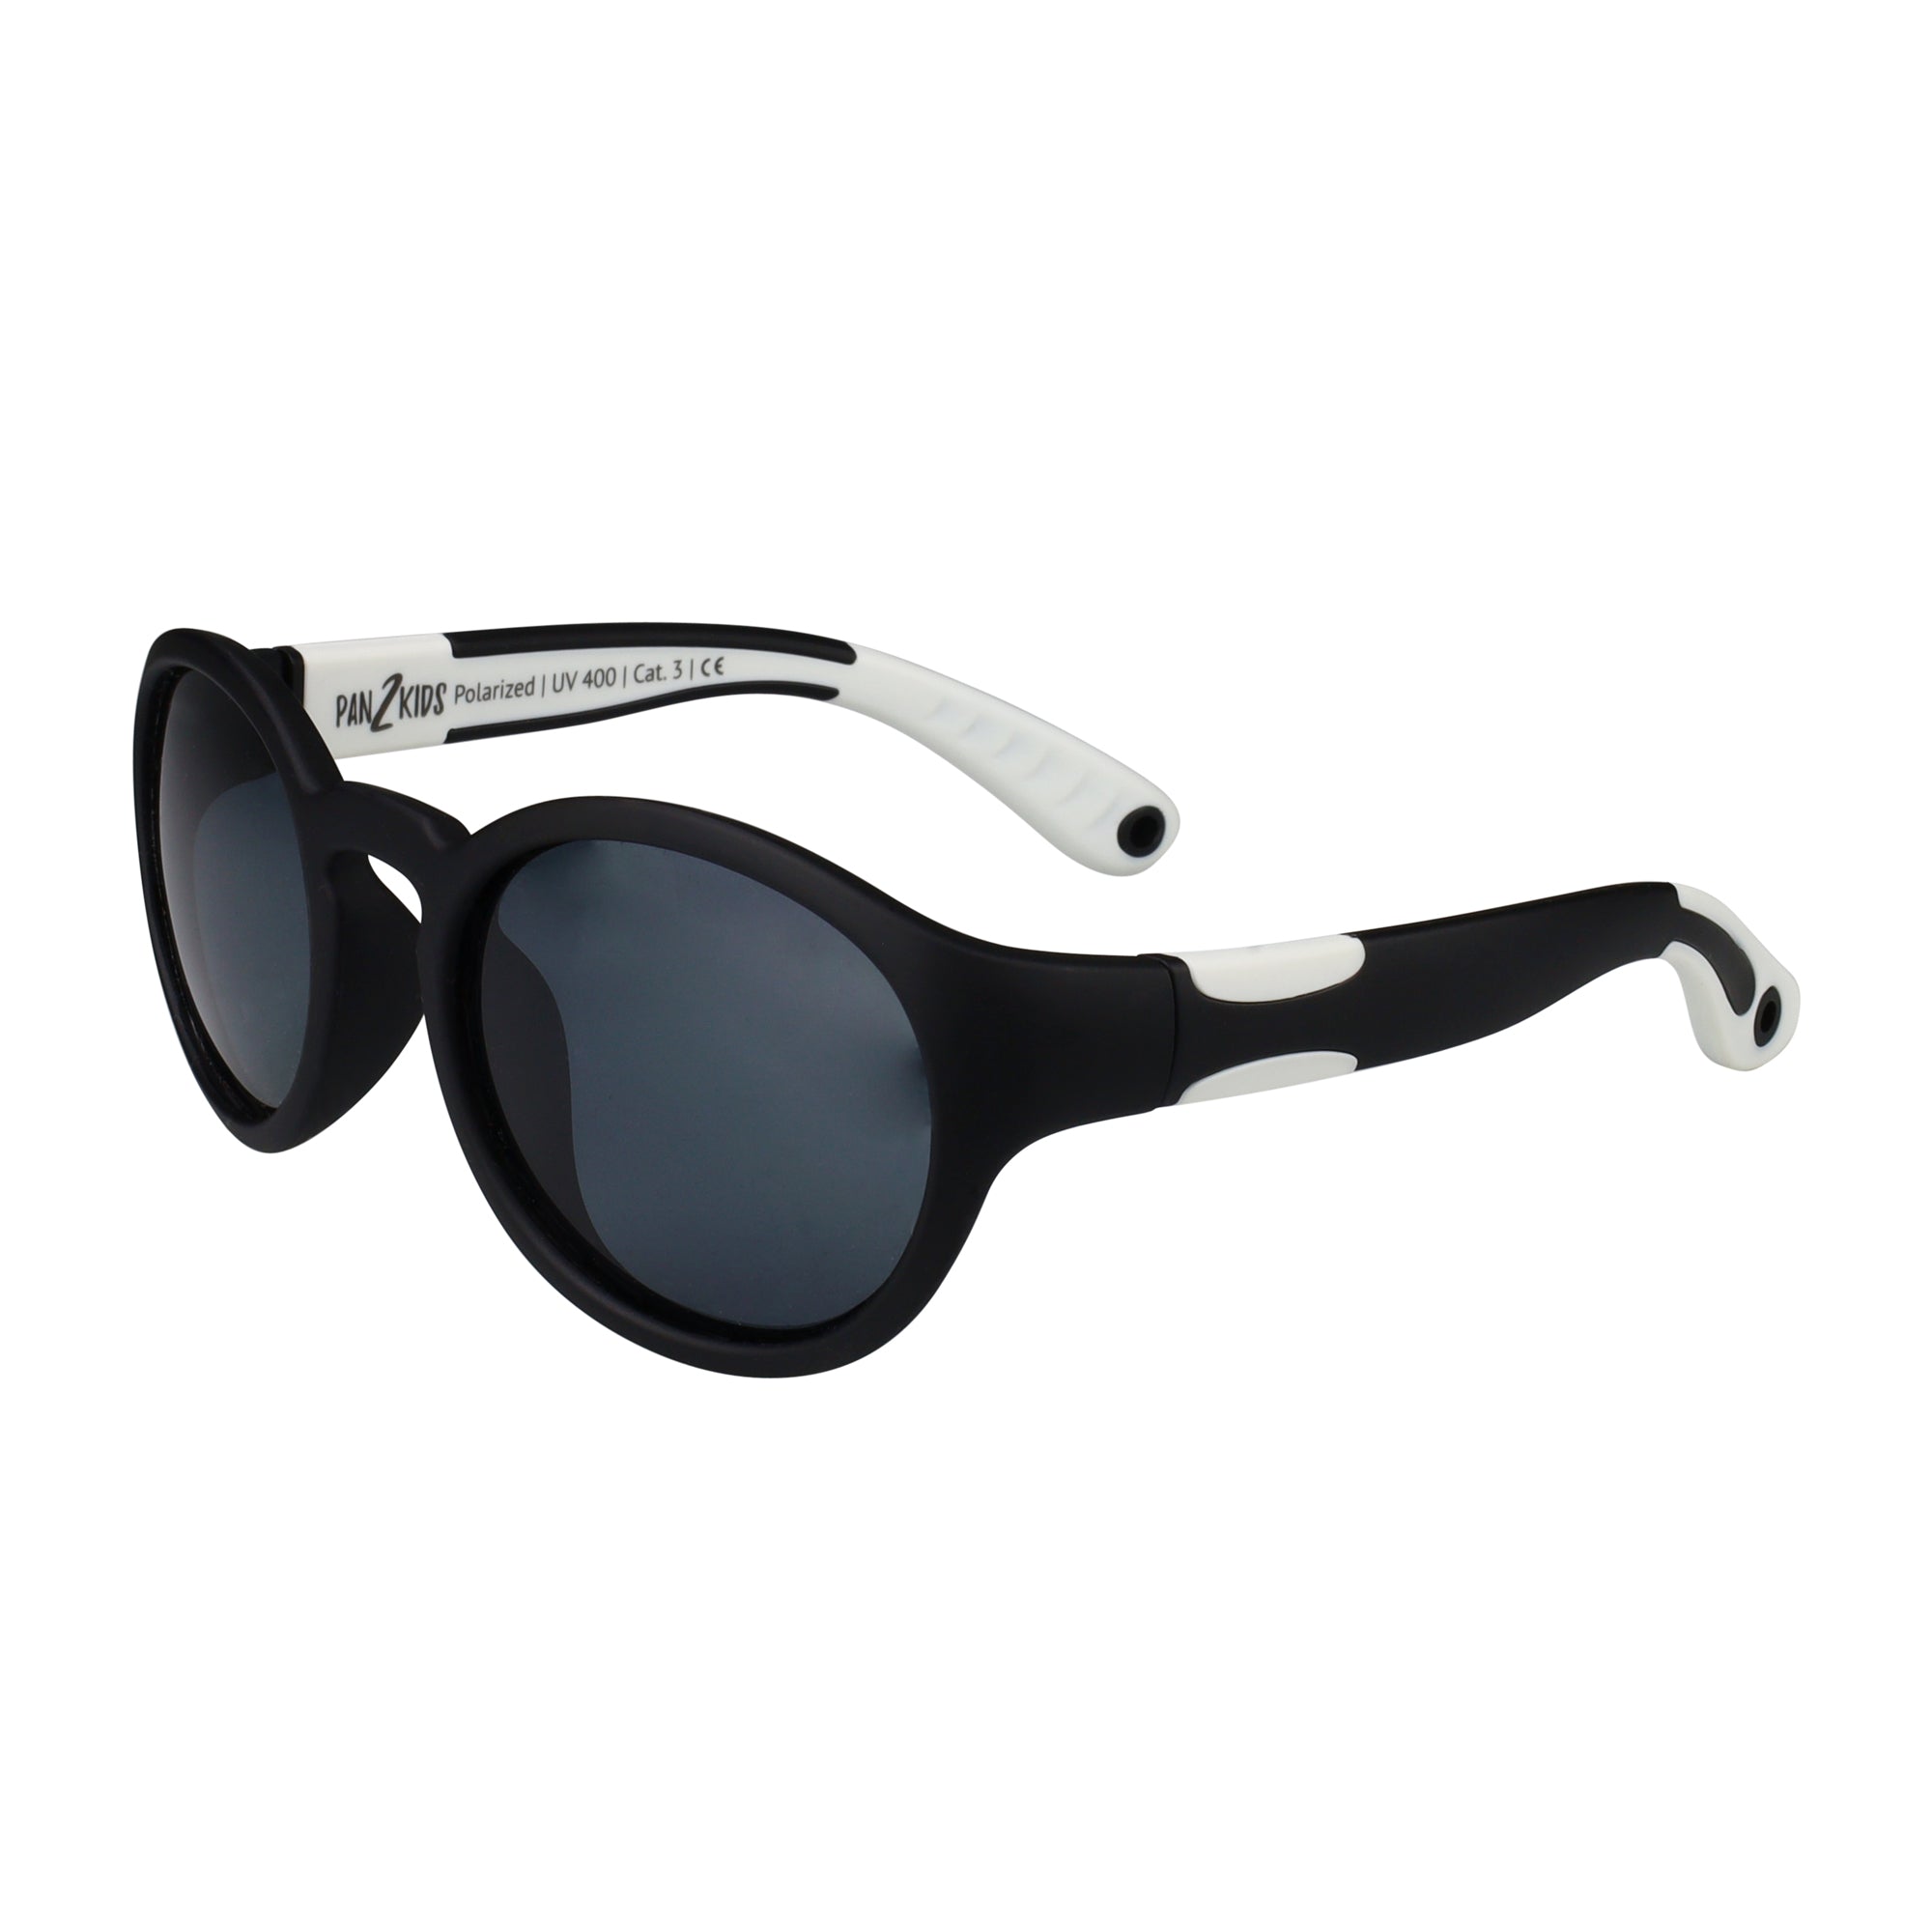 Pan2Kids Kinder-Sonnenbrille, 2-5 Jahre , Black & White